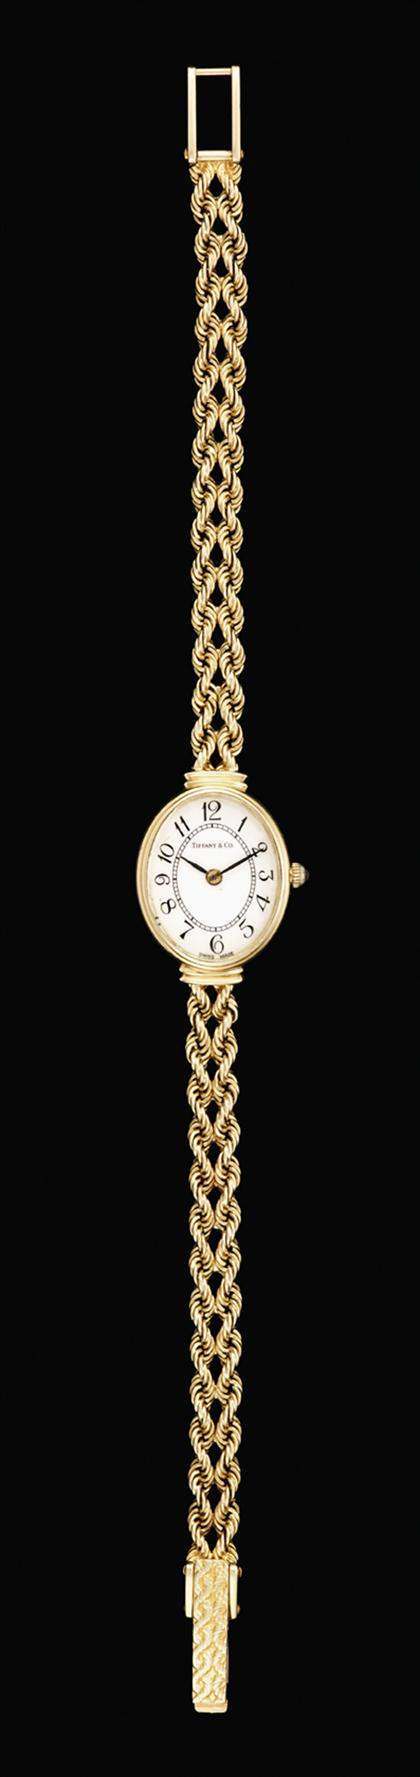 Lady's 14 karat yellow gold wristwatch, Tiffany